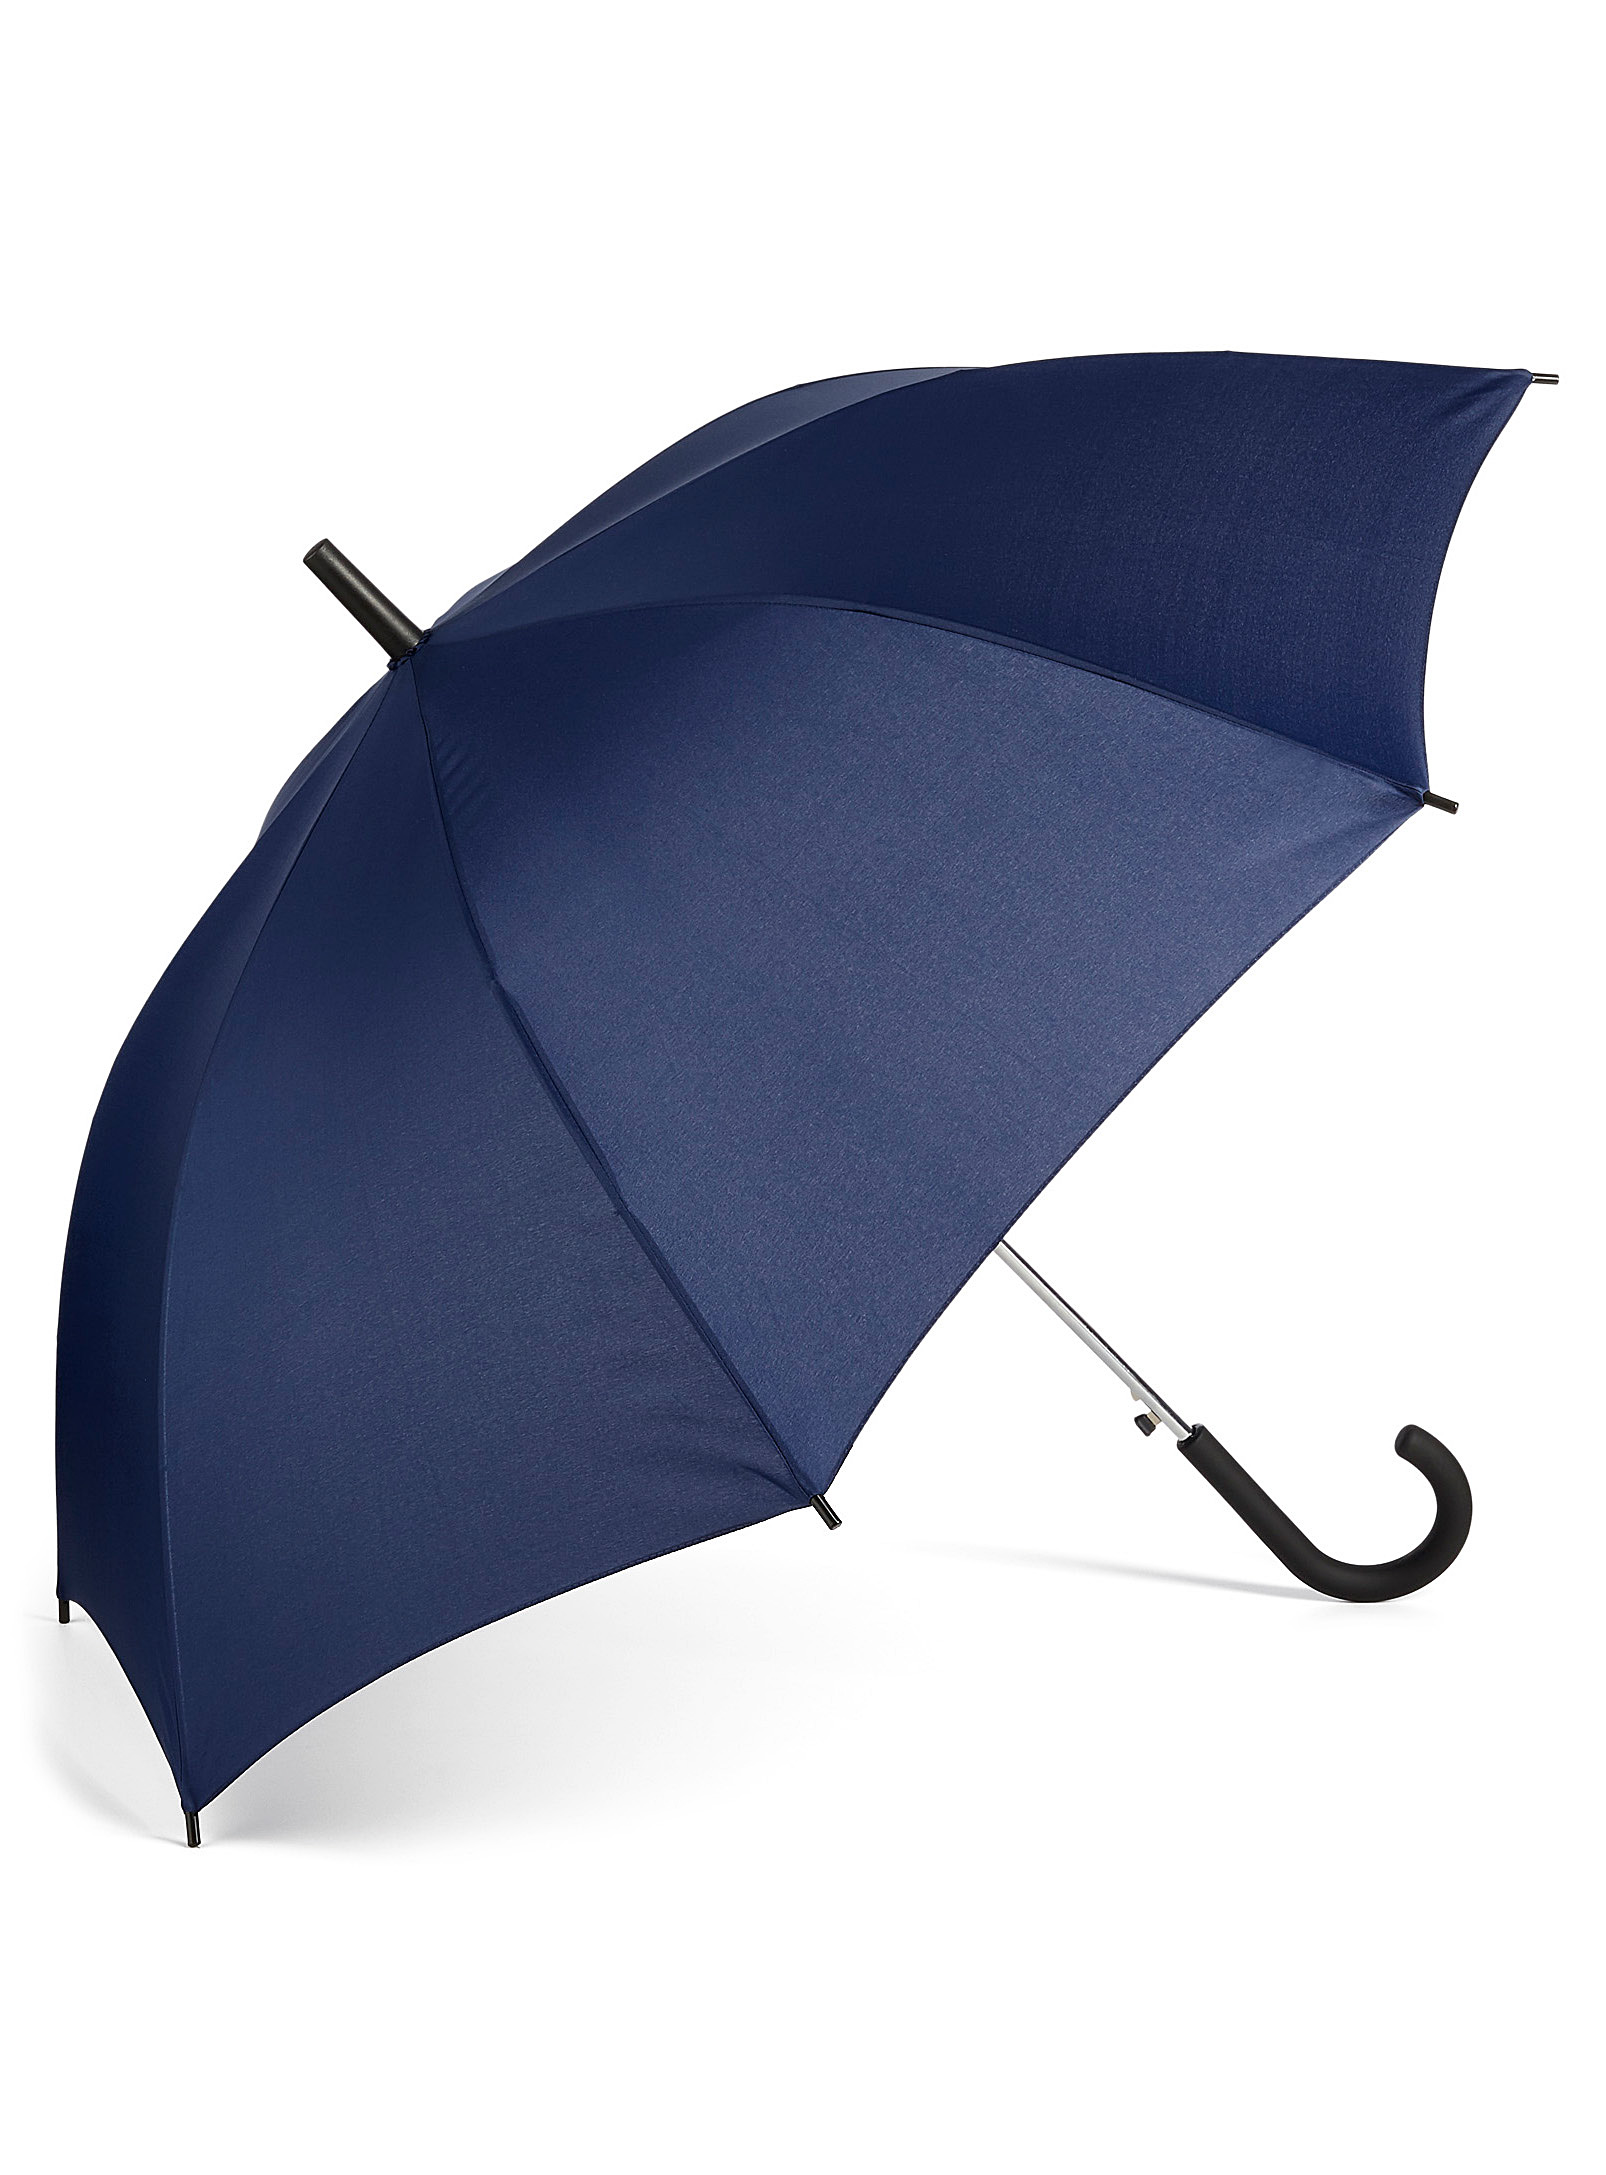 Le 31 Monochrome Umbrella In Marine Blue